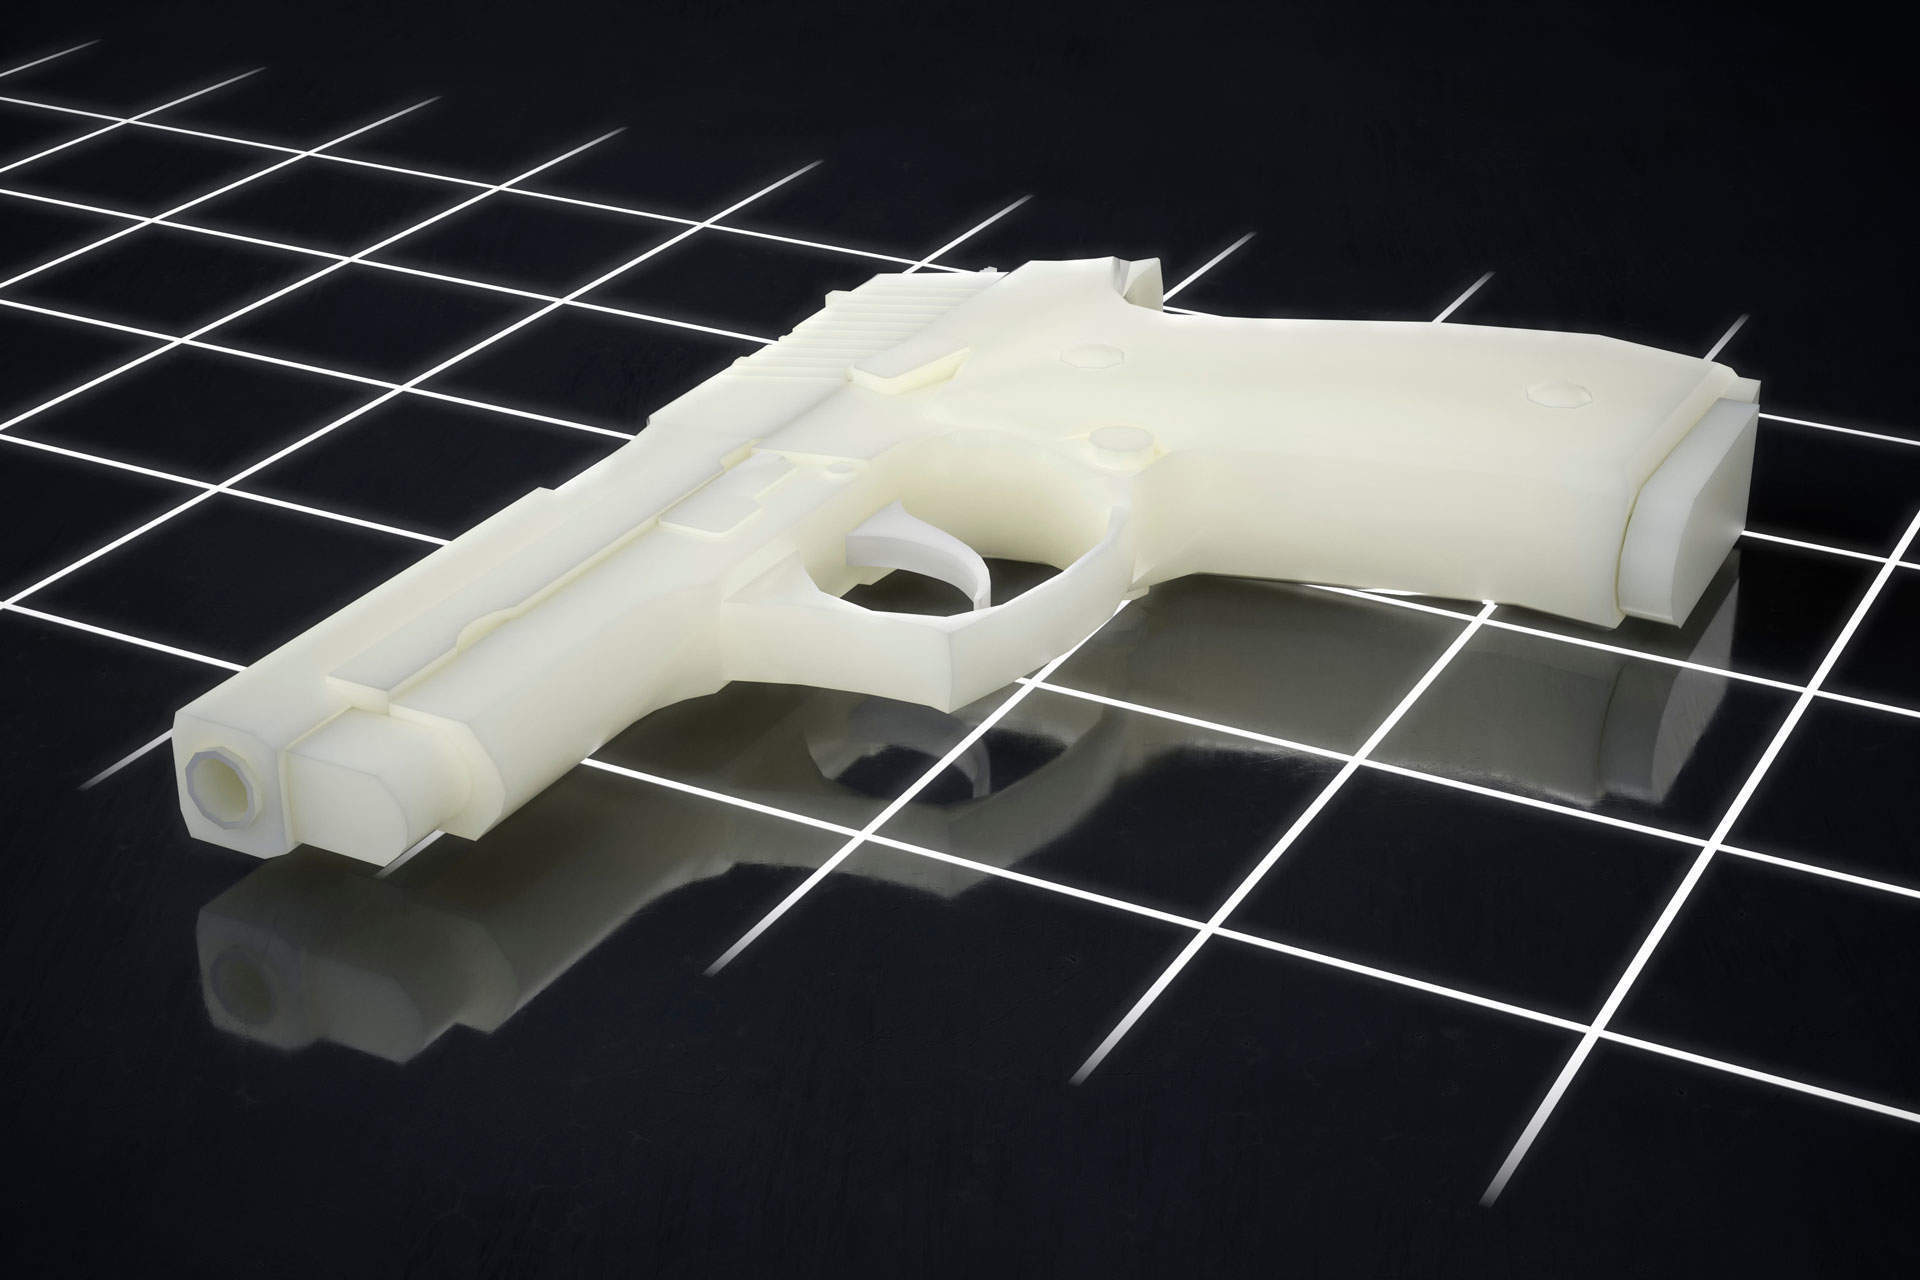 3d printed plastic gun